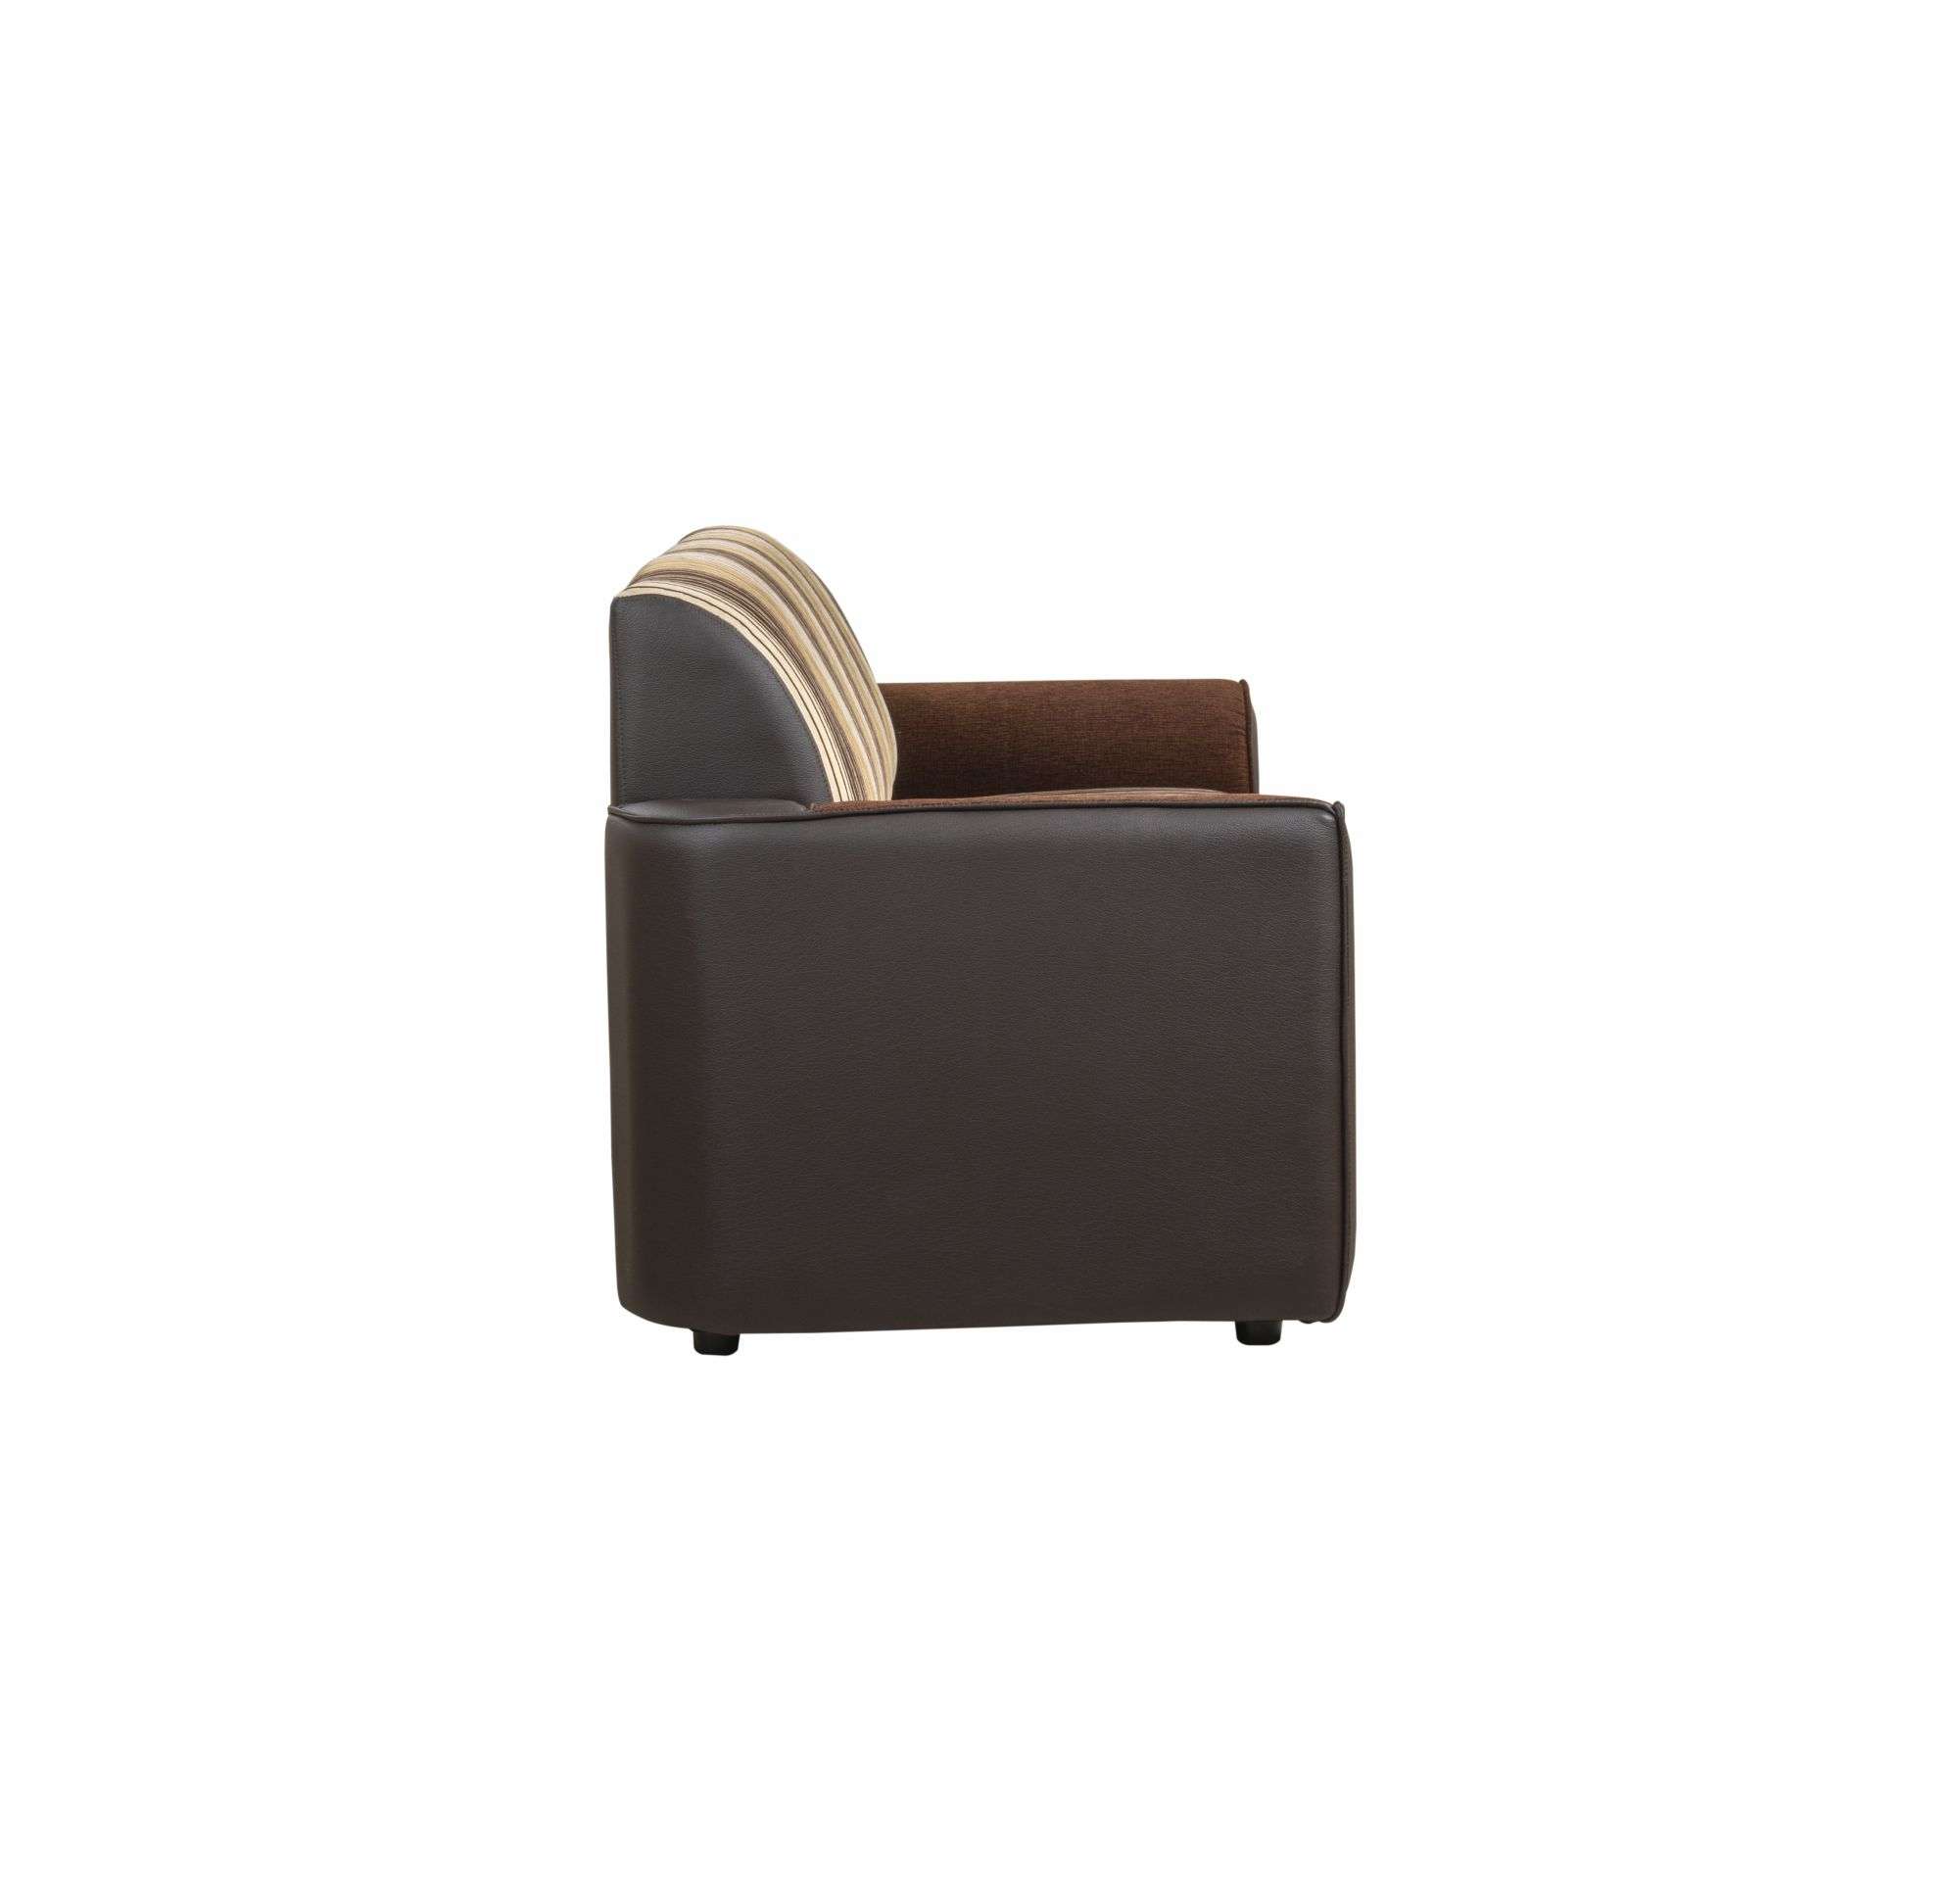 SLC003-Leco Sofa 3 Seater-EAL02/NP02/NQ02